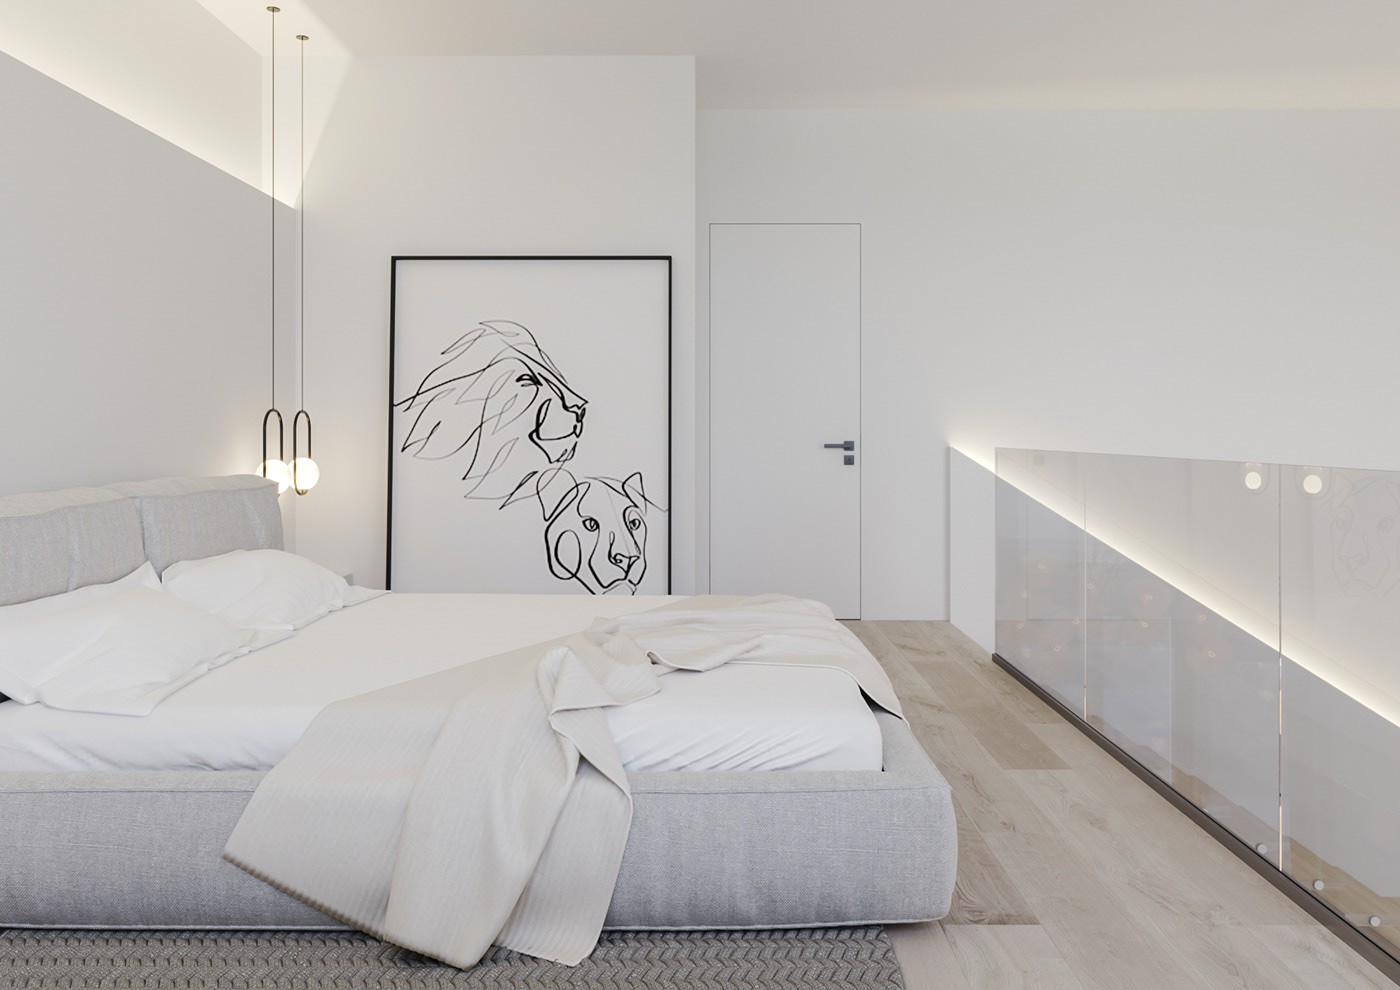 Hình ảnh phòng ngủ màu trắng chủ đạo với giường nệm êm ái, tranh hình đầu sư tử tạo điểm nhấn bắt mắt